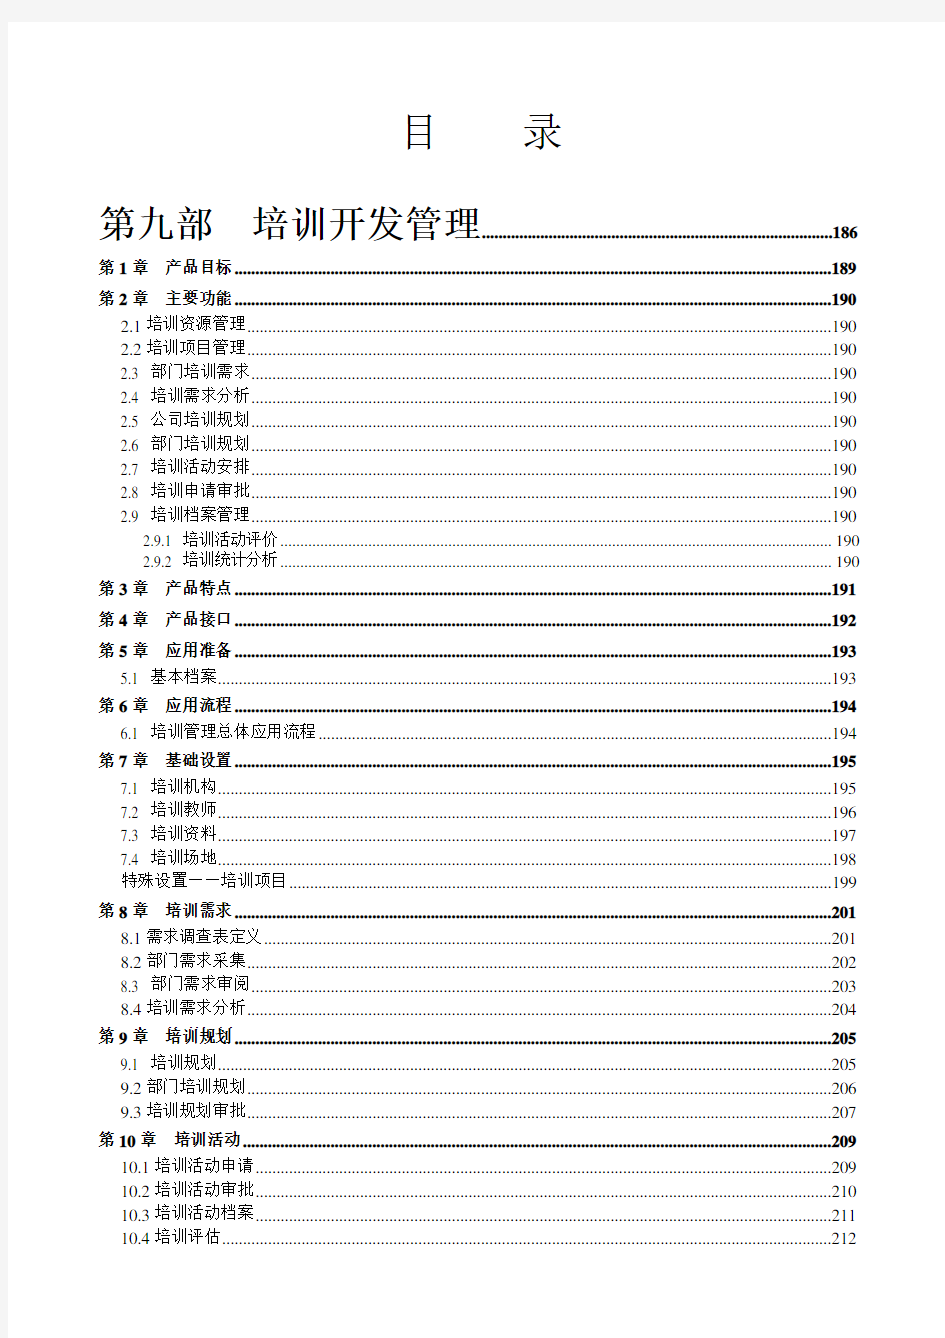 用友e-HR V2.31手册PDF-3